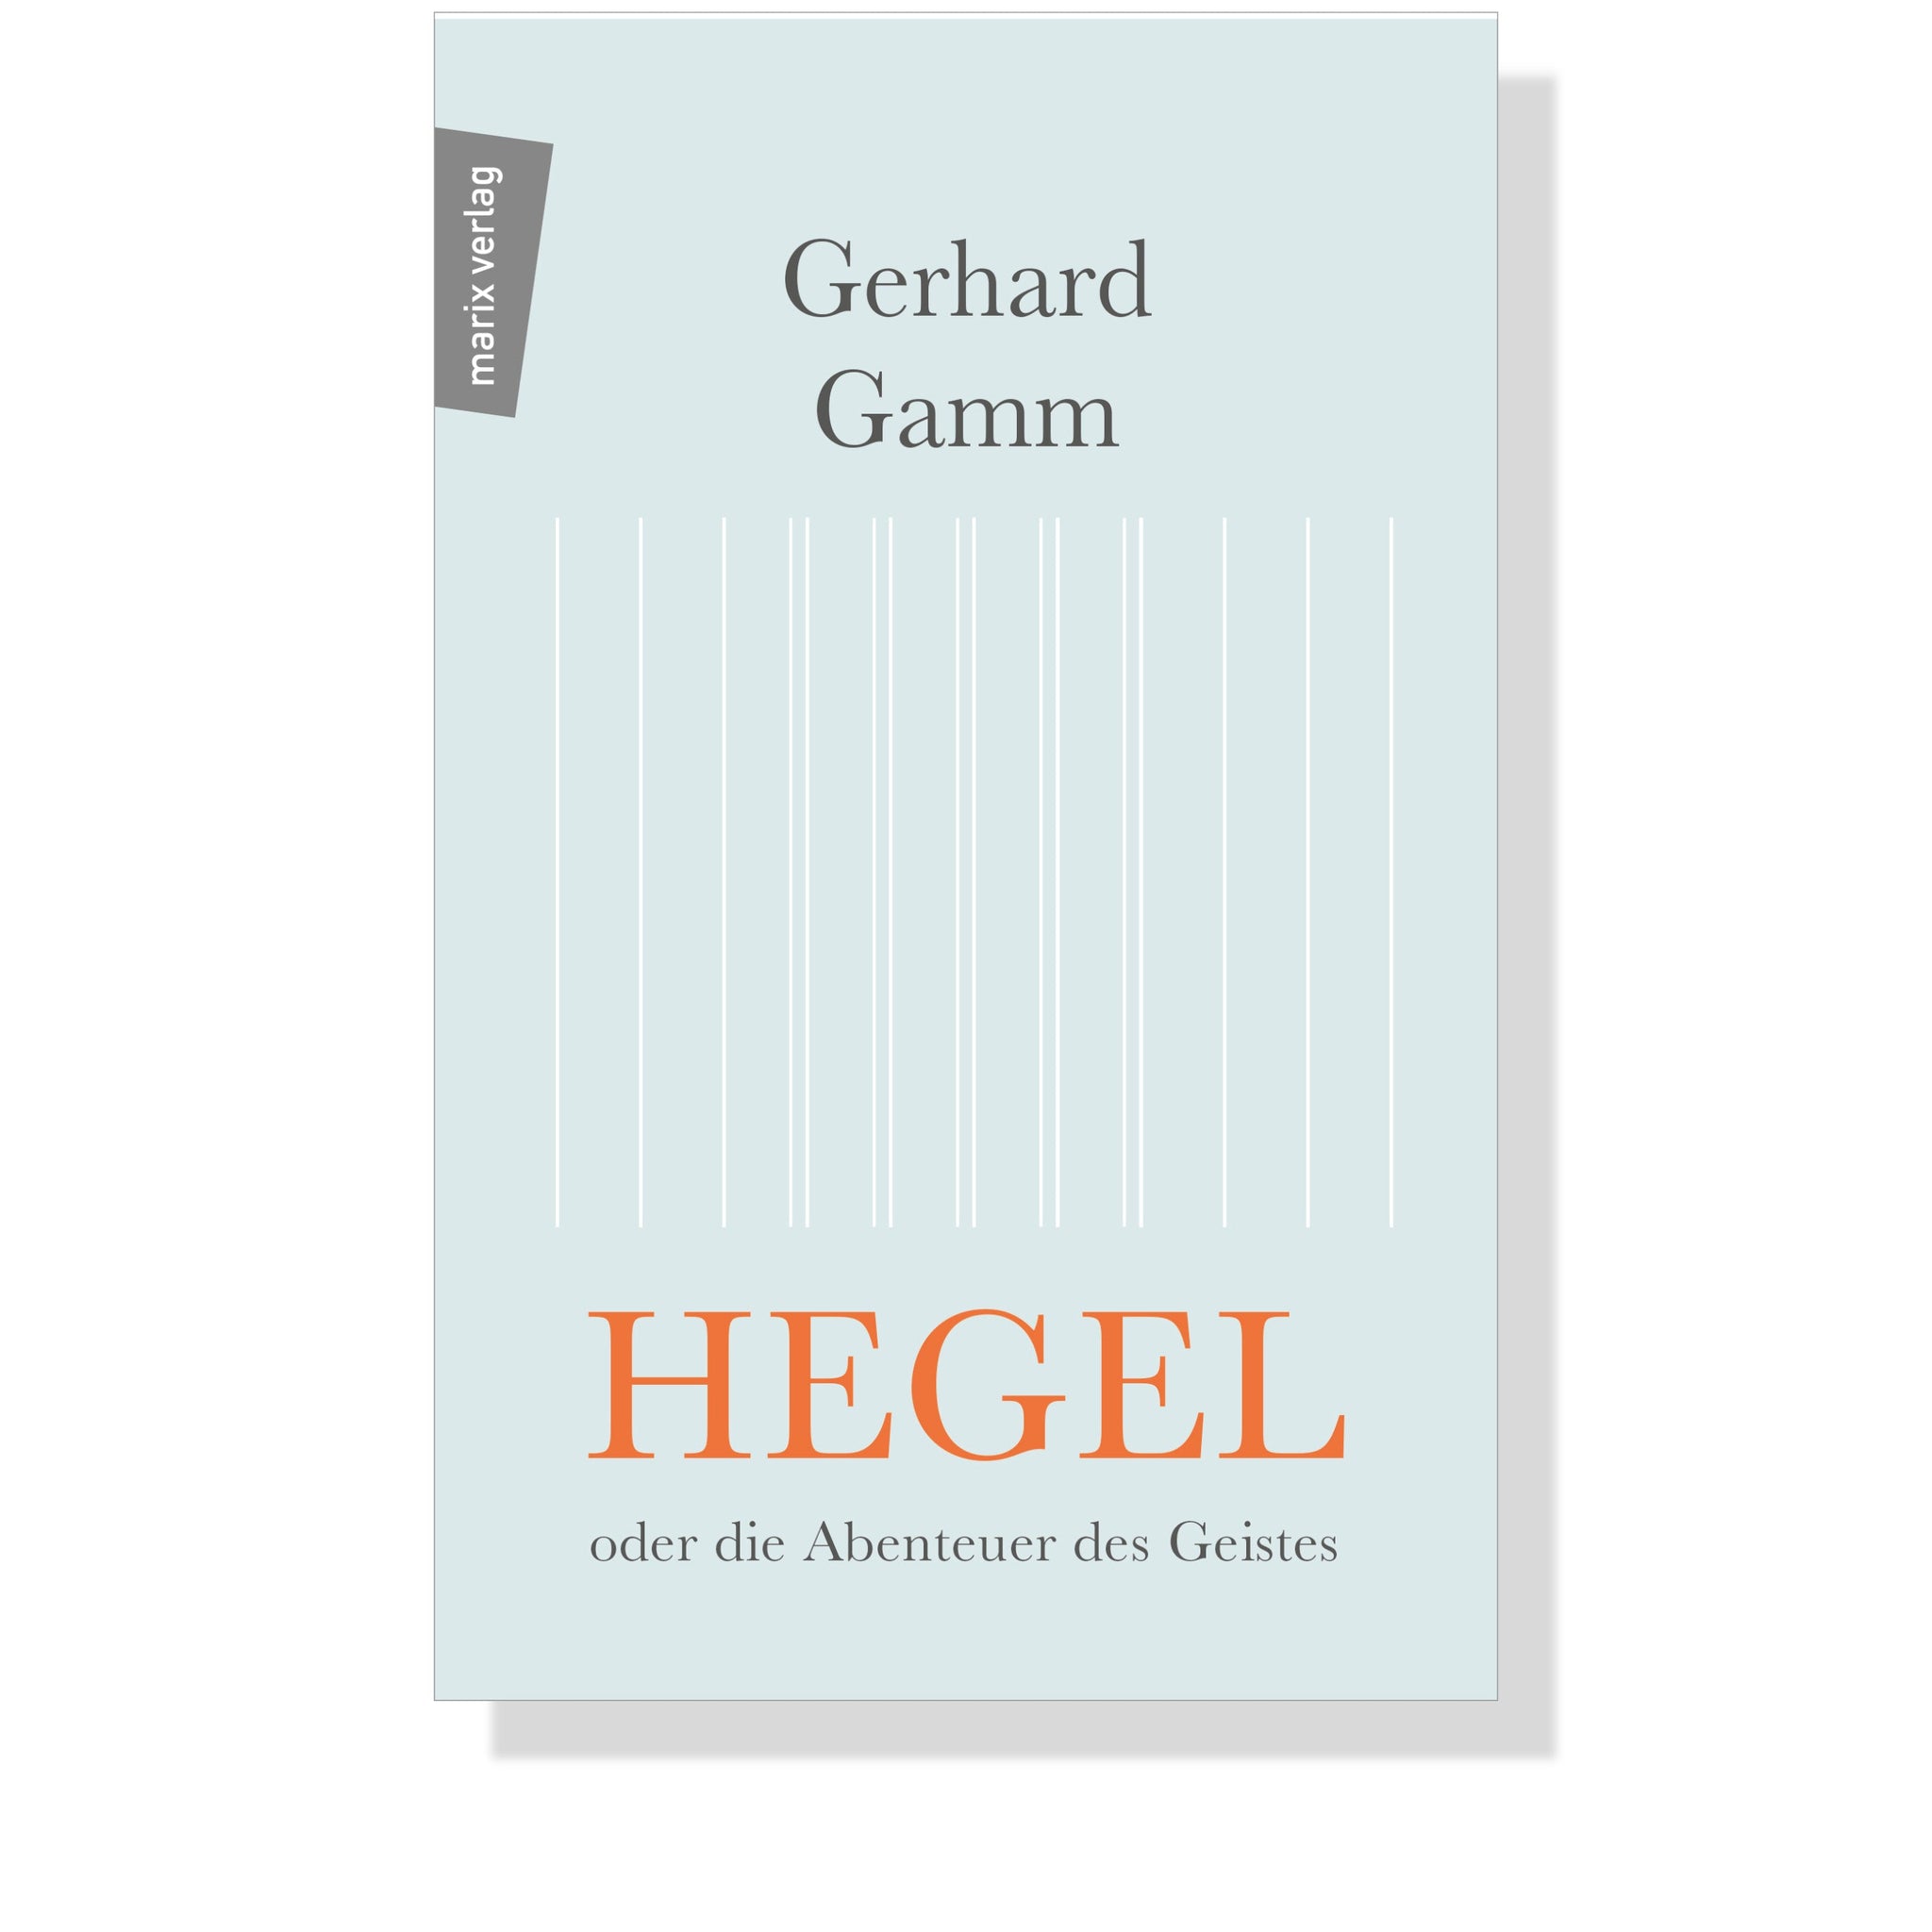 Hegel oder die Abenteuer des Geistes